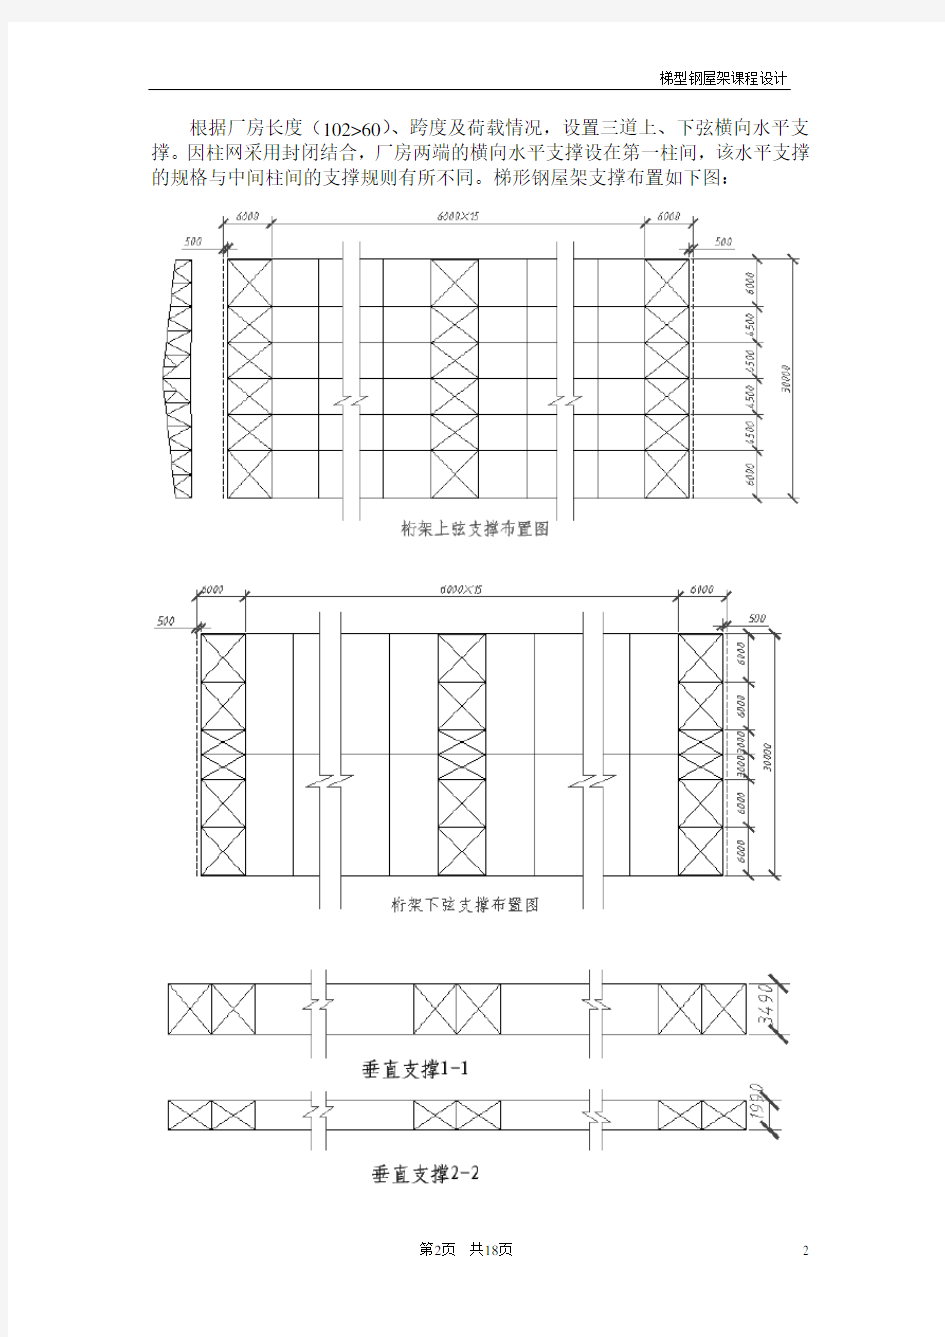 梯形钢屋架课程设计例题